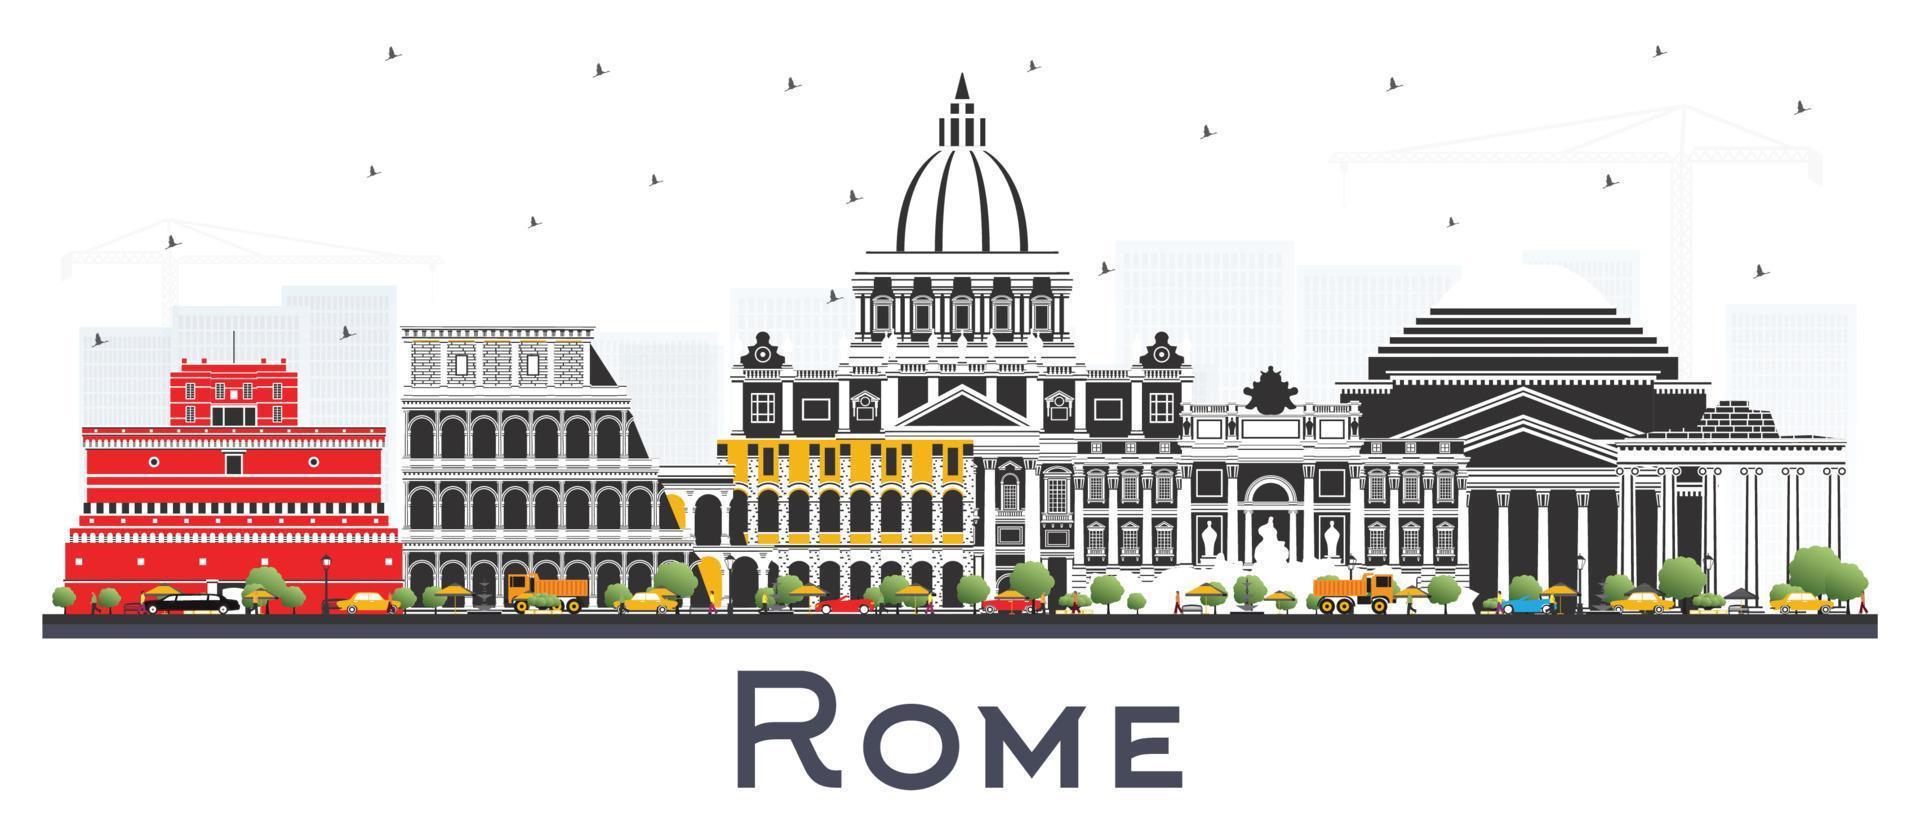 rom italien stadtskyline mit farbgebäuden isoliert auf weiß. vektor